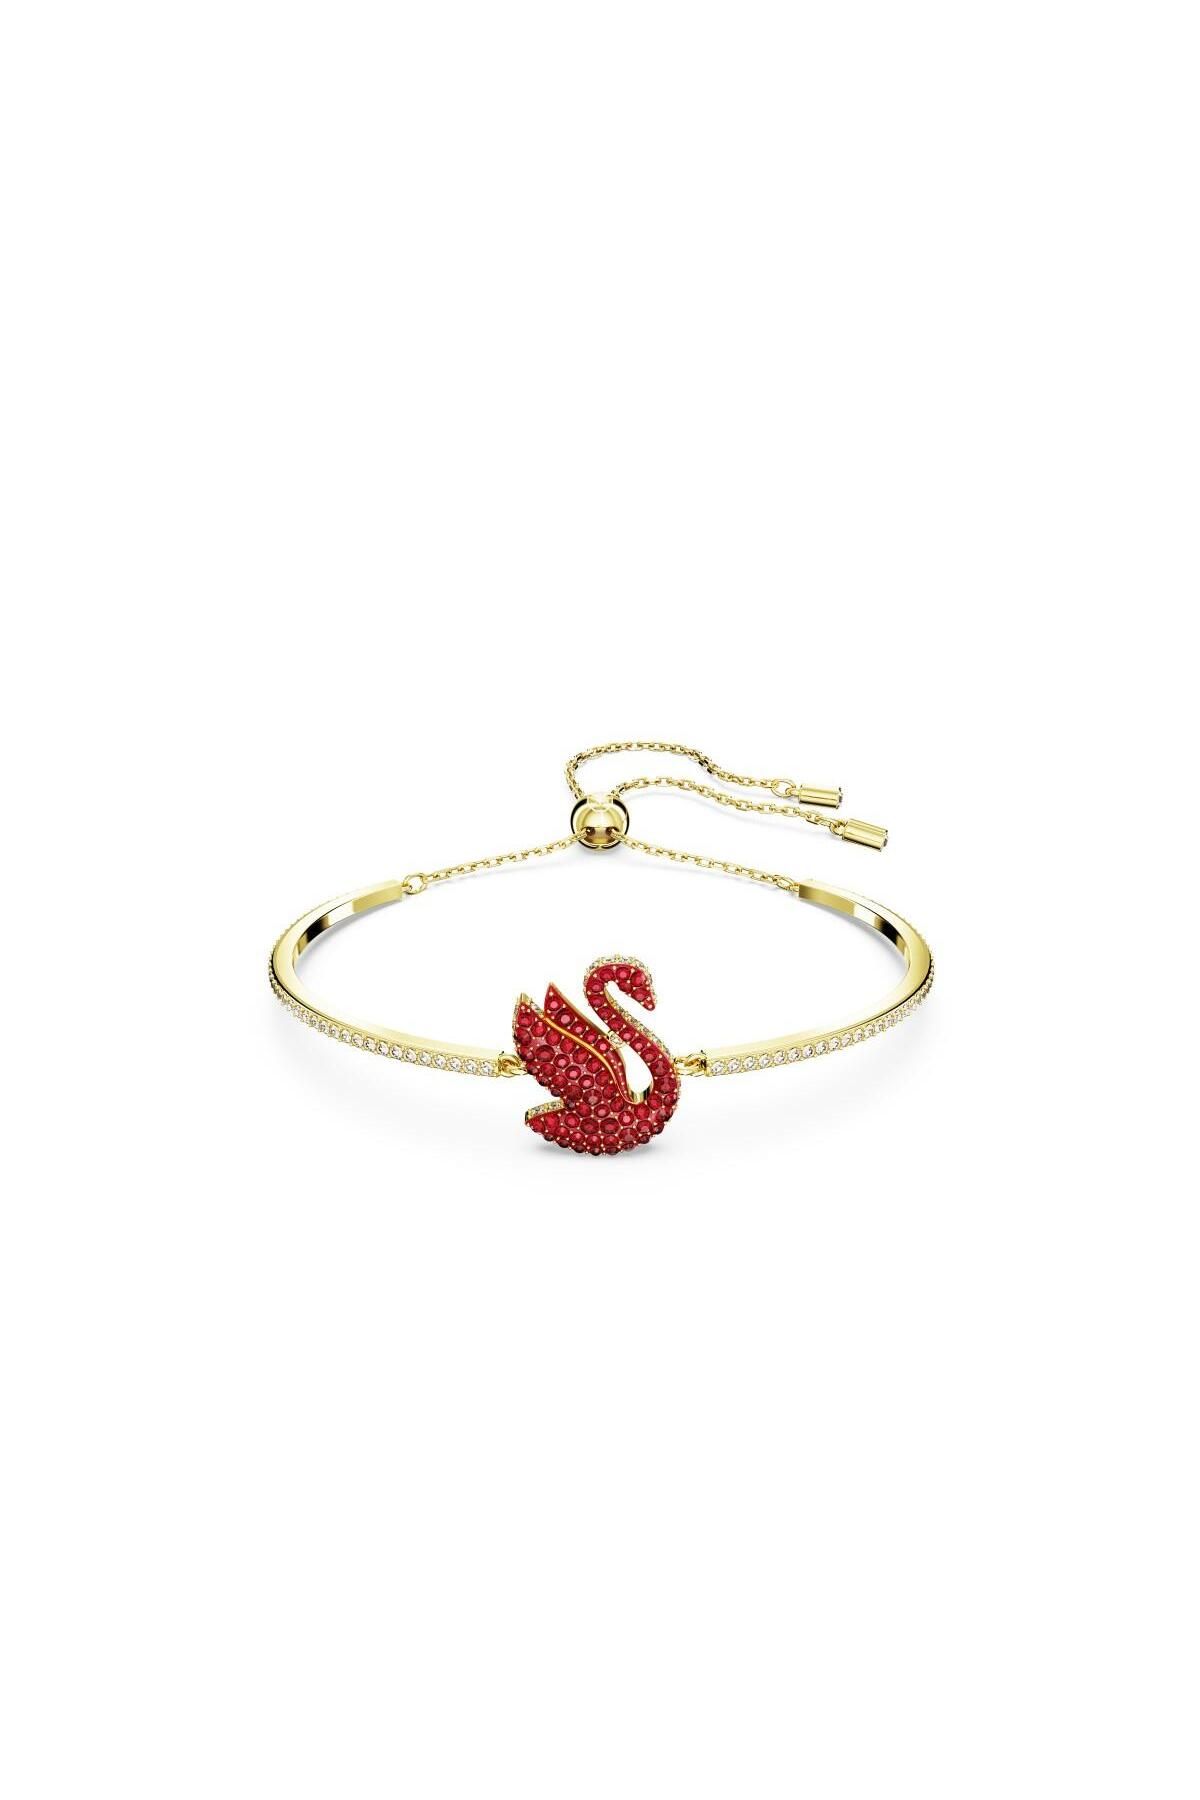 Swarovski 5649774 Swarovski Bilezik iconic Swan:Bracelet Xs Red Scar/Gos S